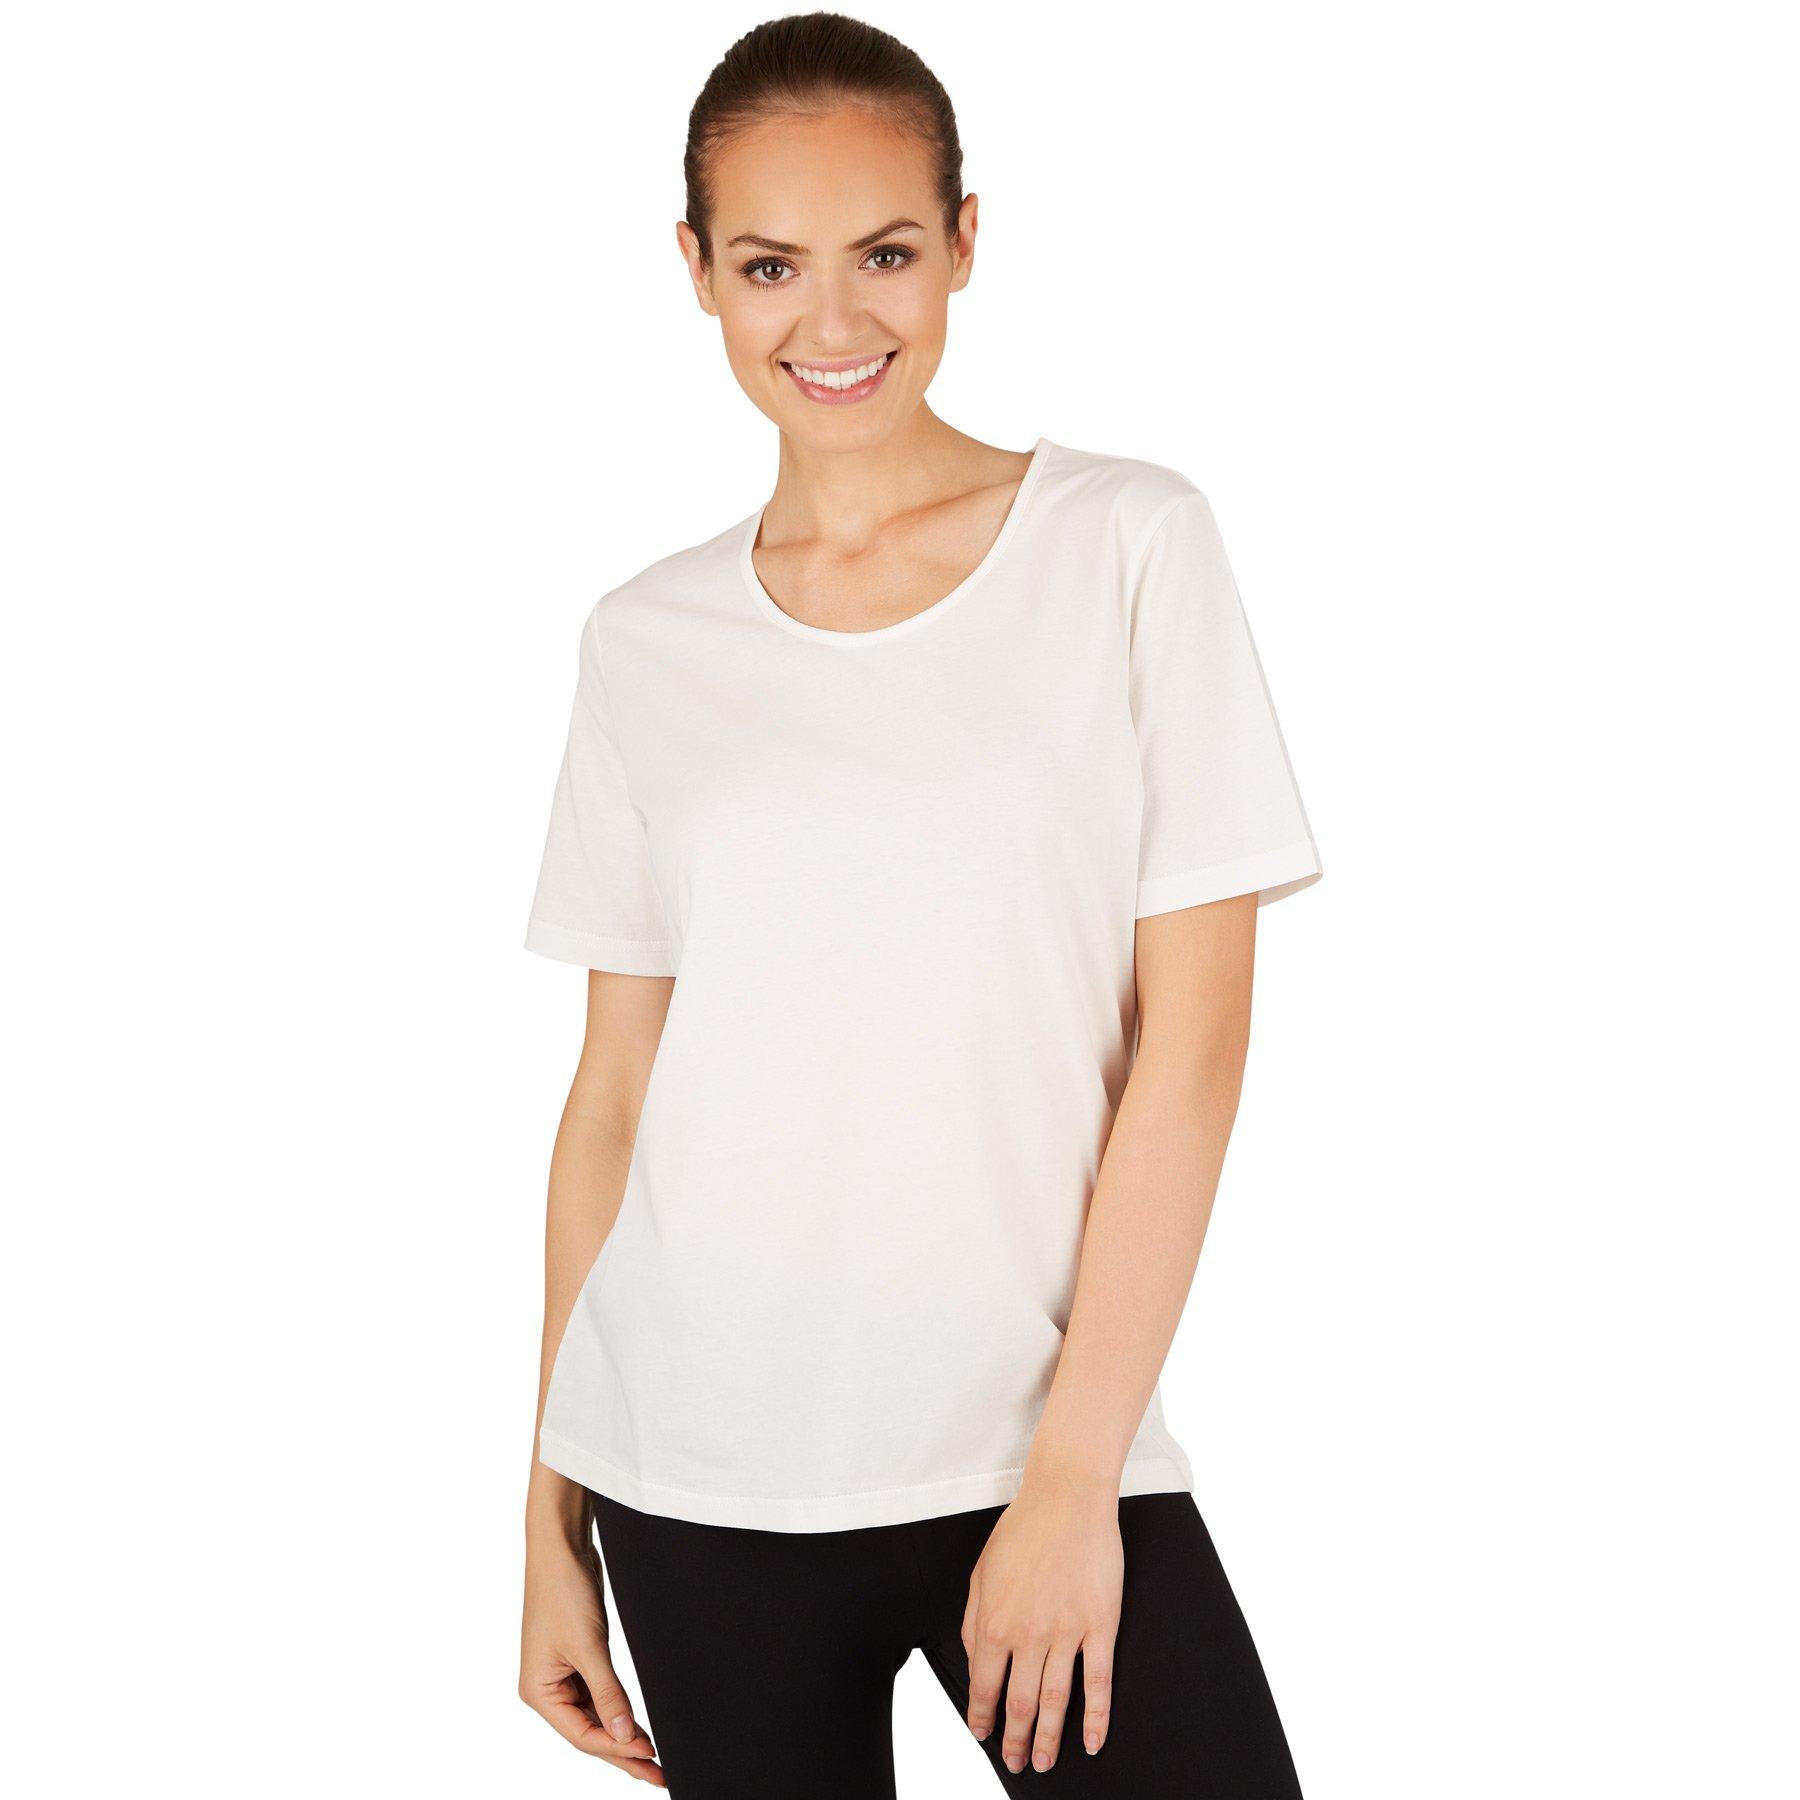 Frauen T-shirt Damen Weiss XL von Tectake